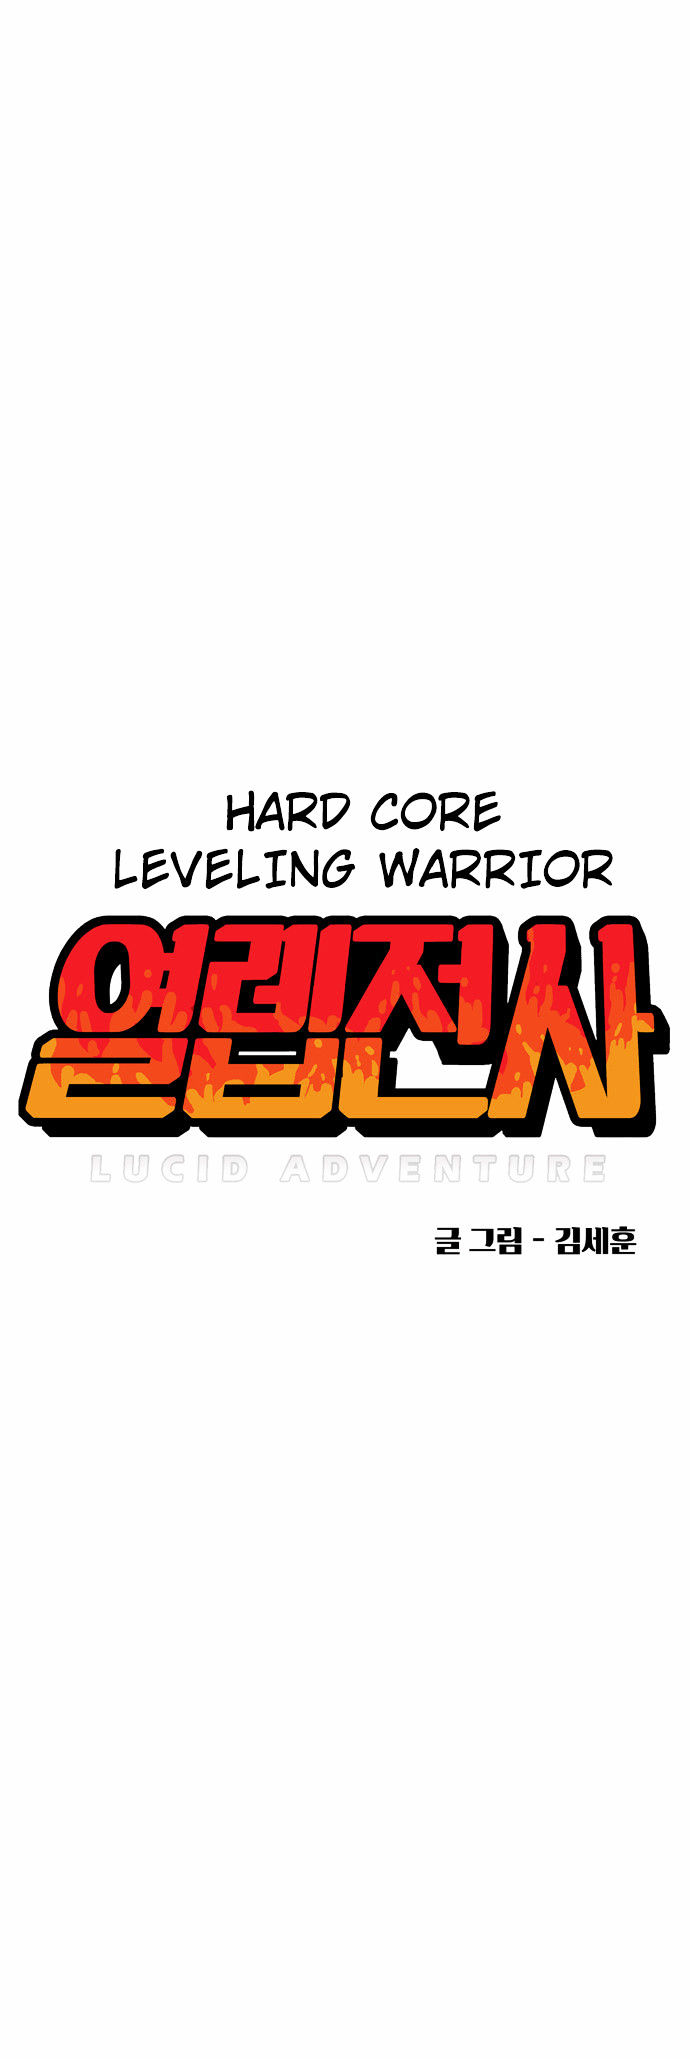 Hardcore Leveling Warrior 1 10